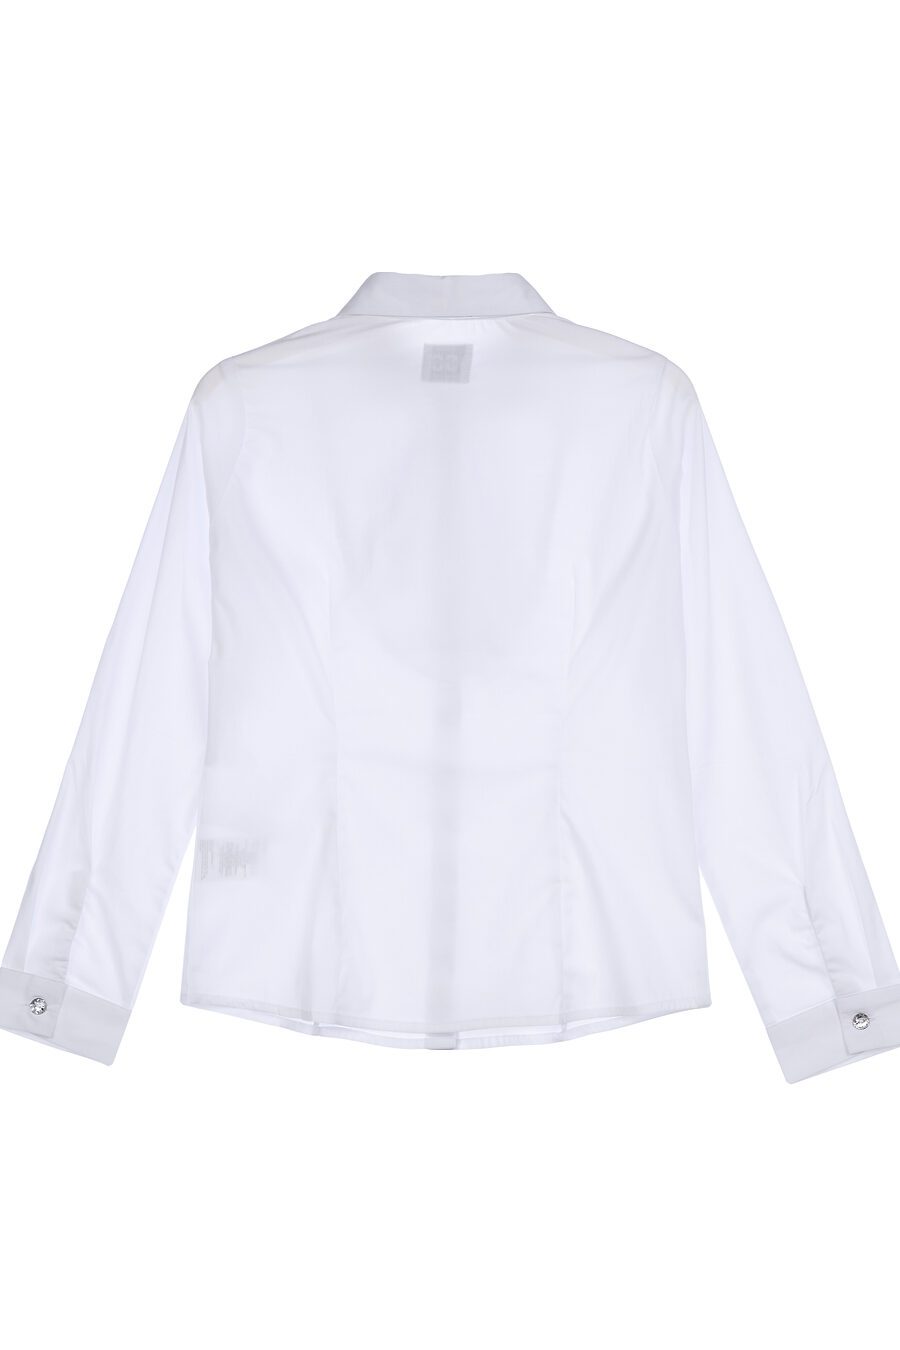 Блуза PLAYTODAY (785749), купить в Moyo.moda